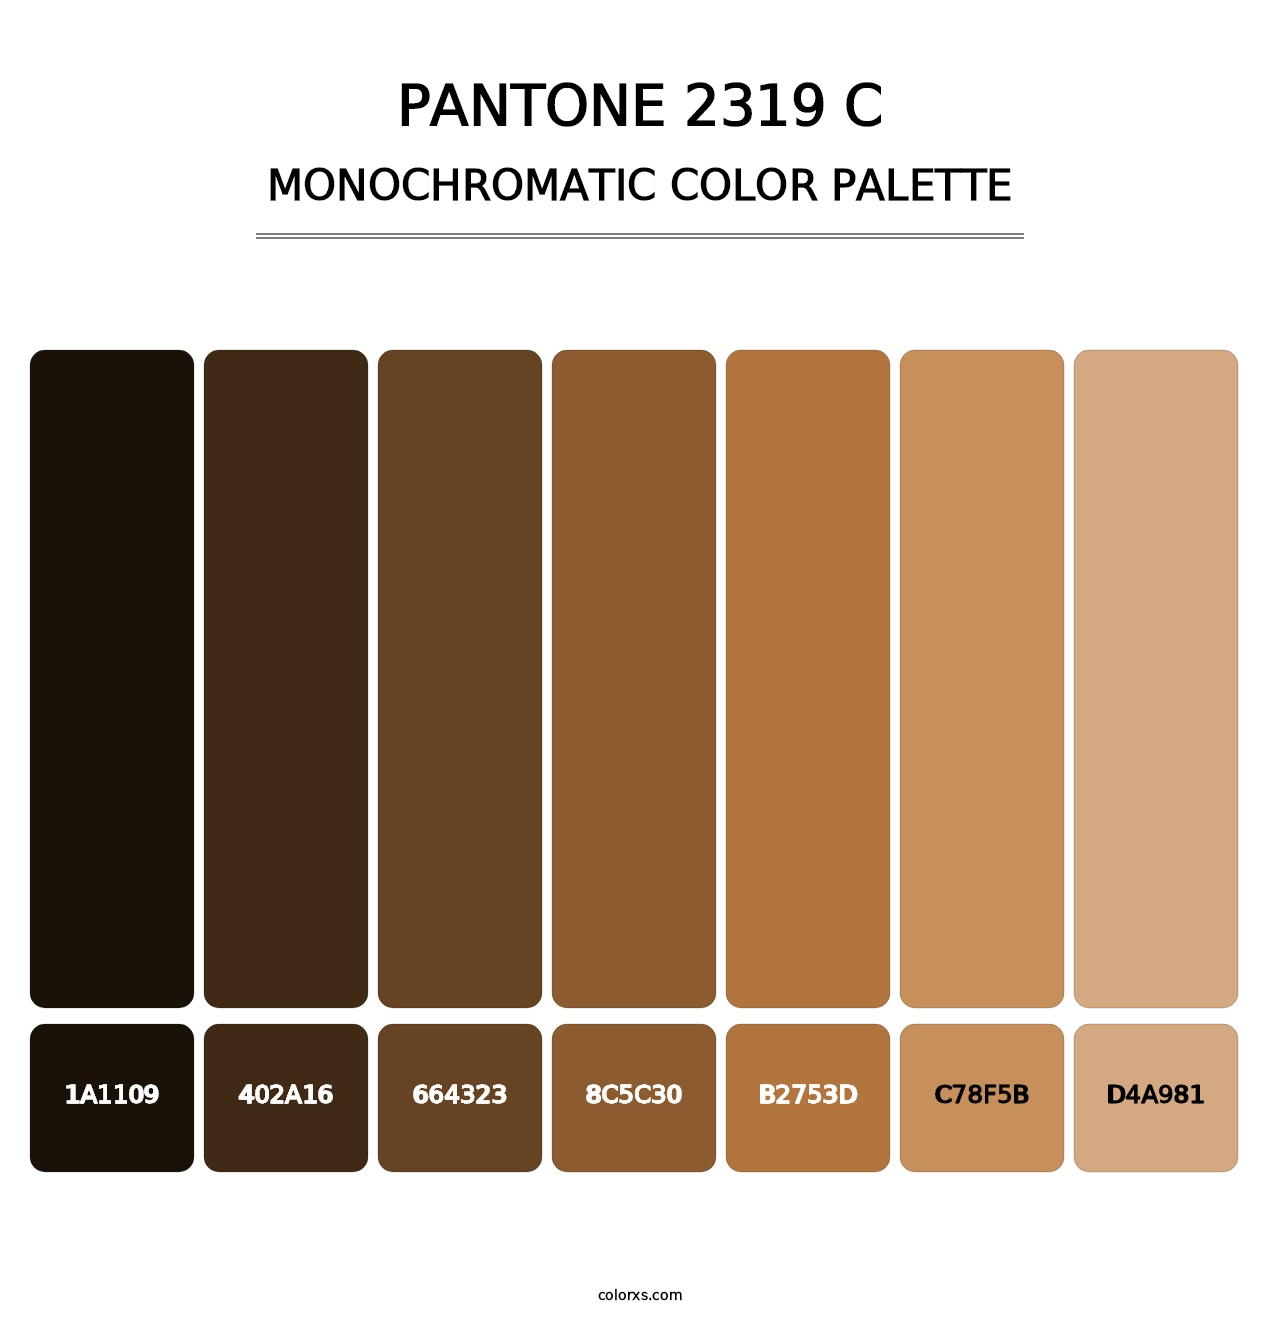 PANTONE 2319 C - Monochromatic Color Palette